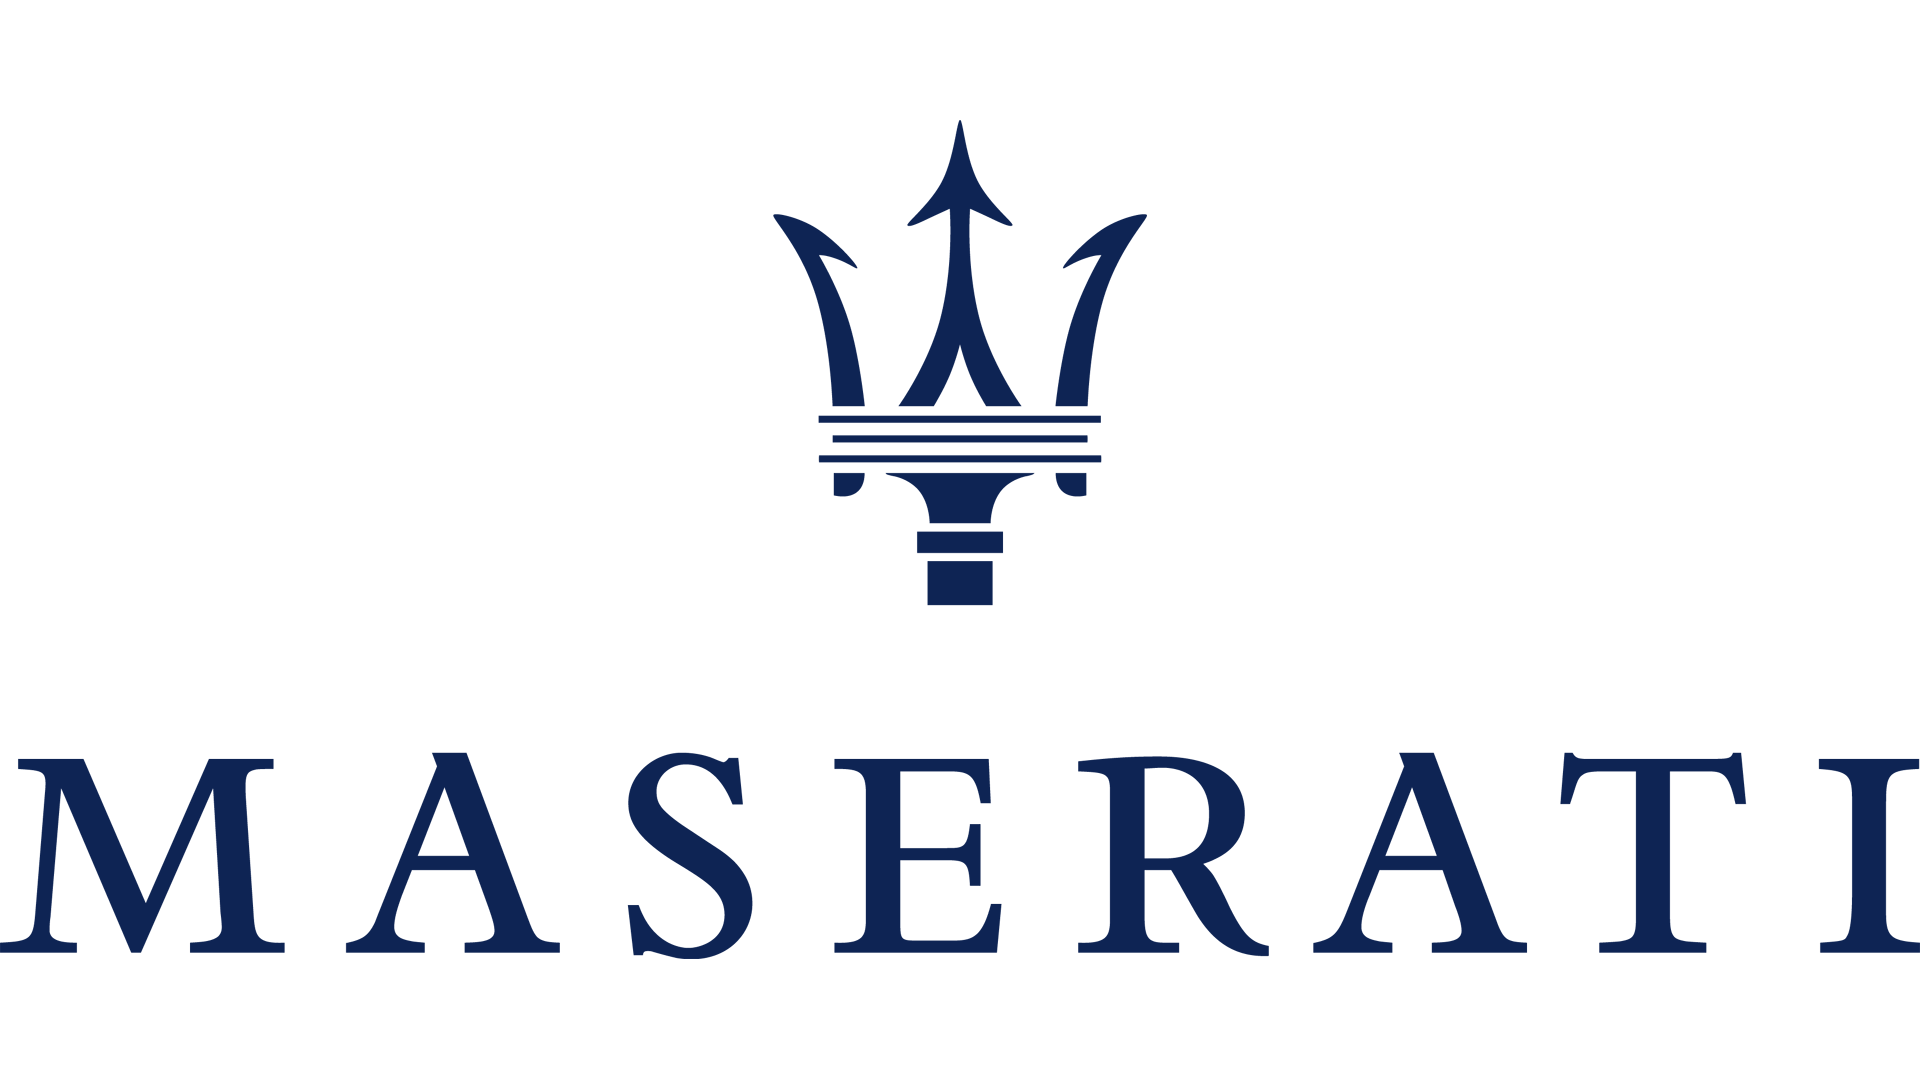 maserati-logo-png-10-maserati